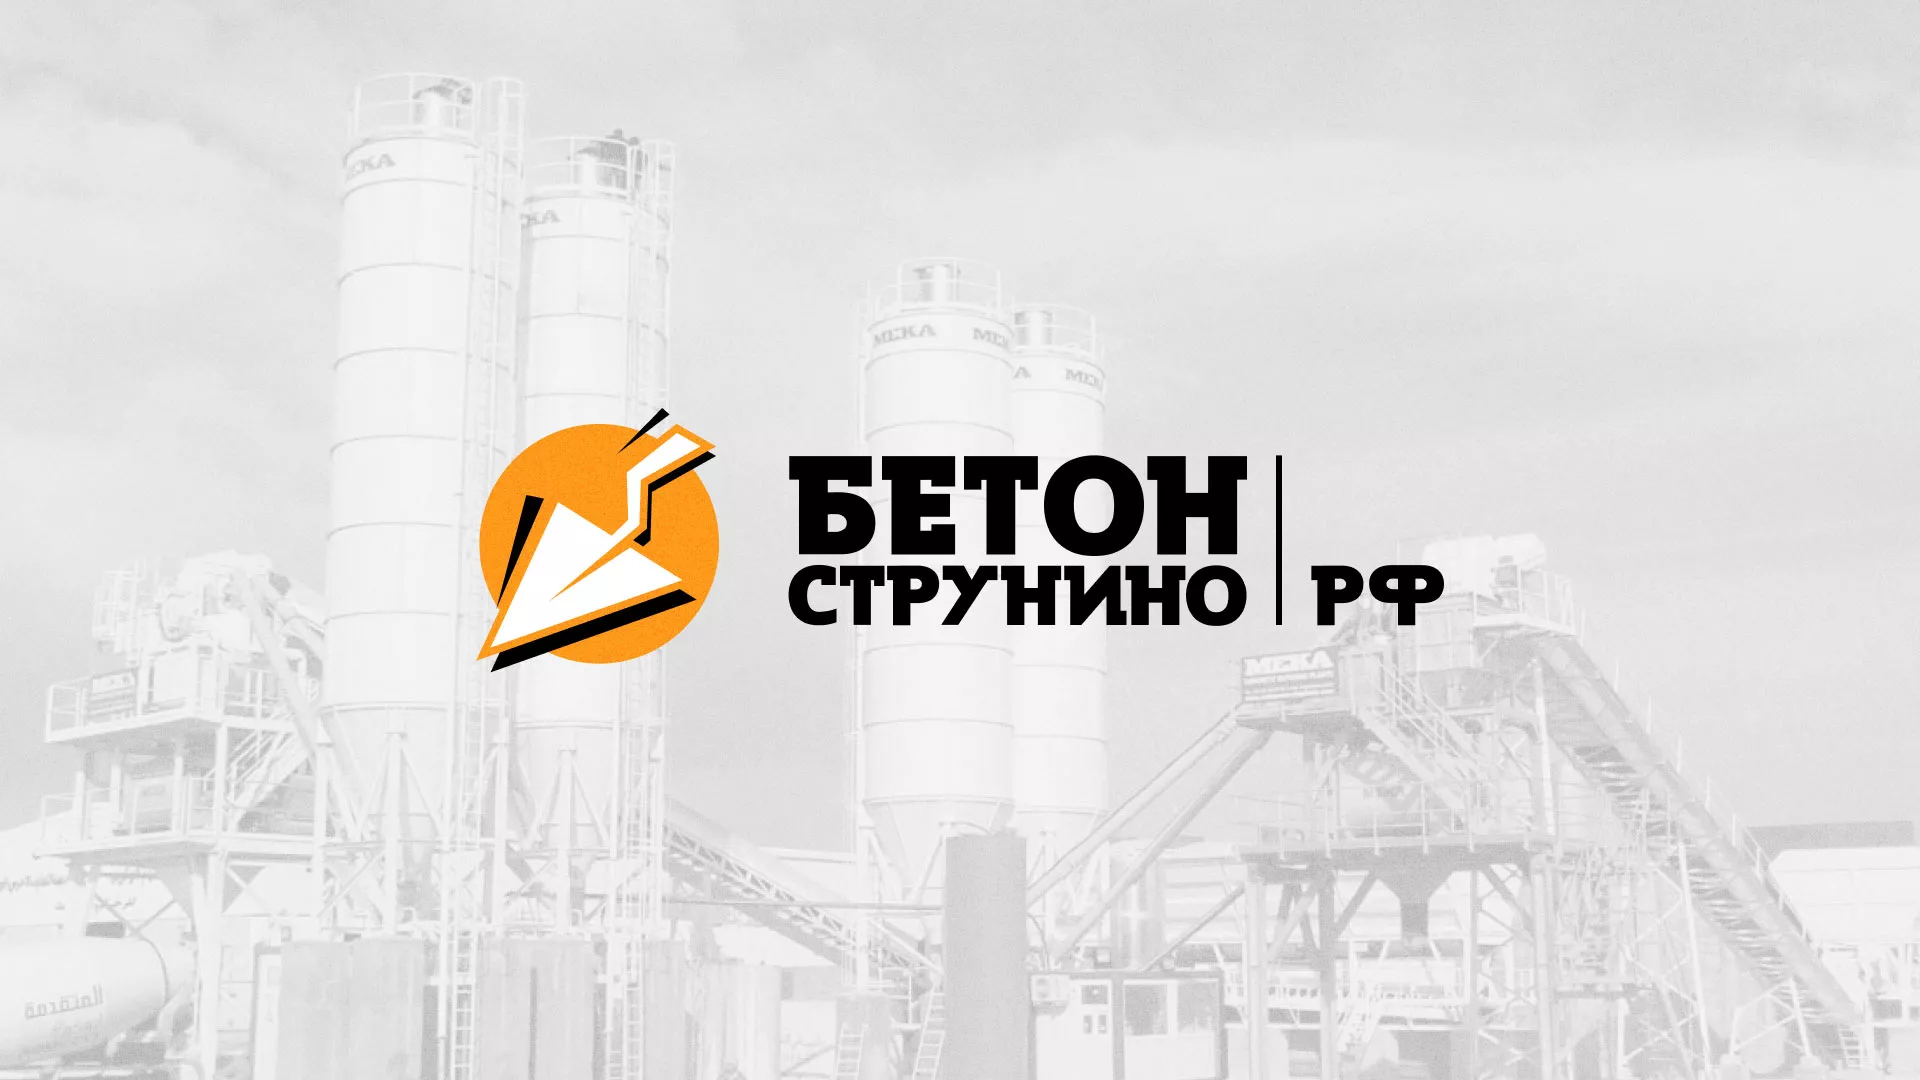 Разработка логотипа для бетонного завода в Бирюче